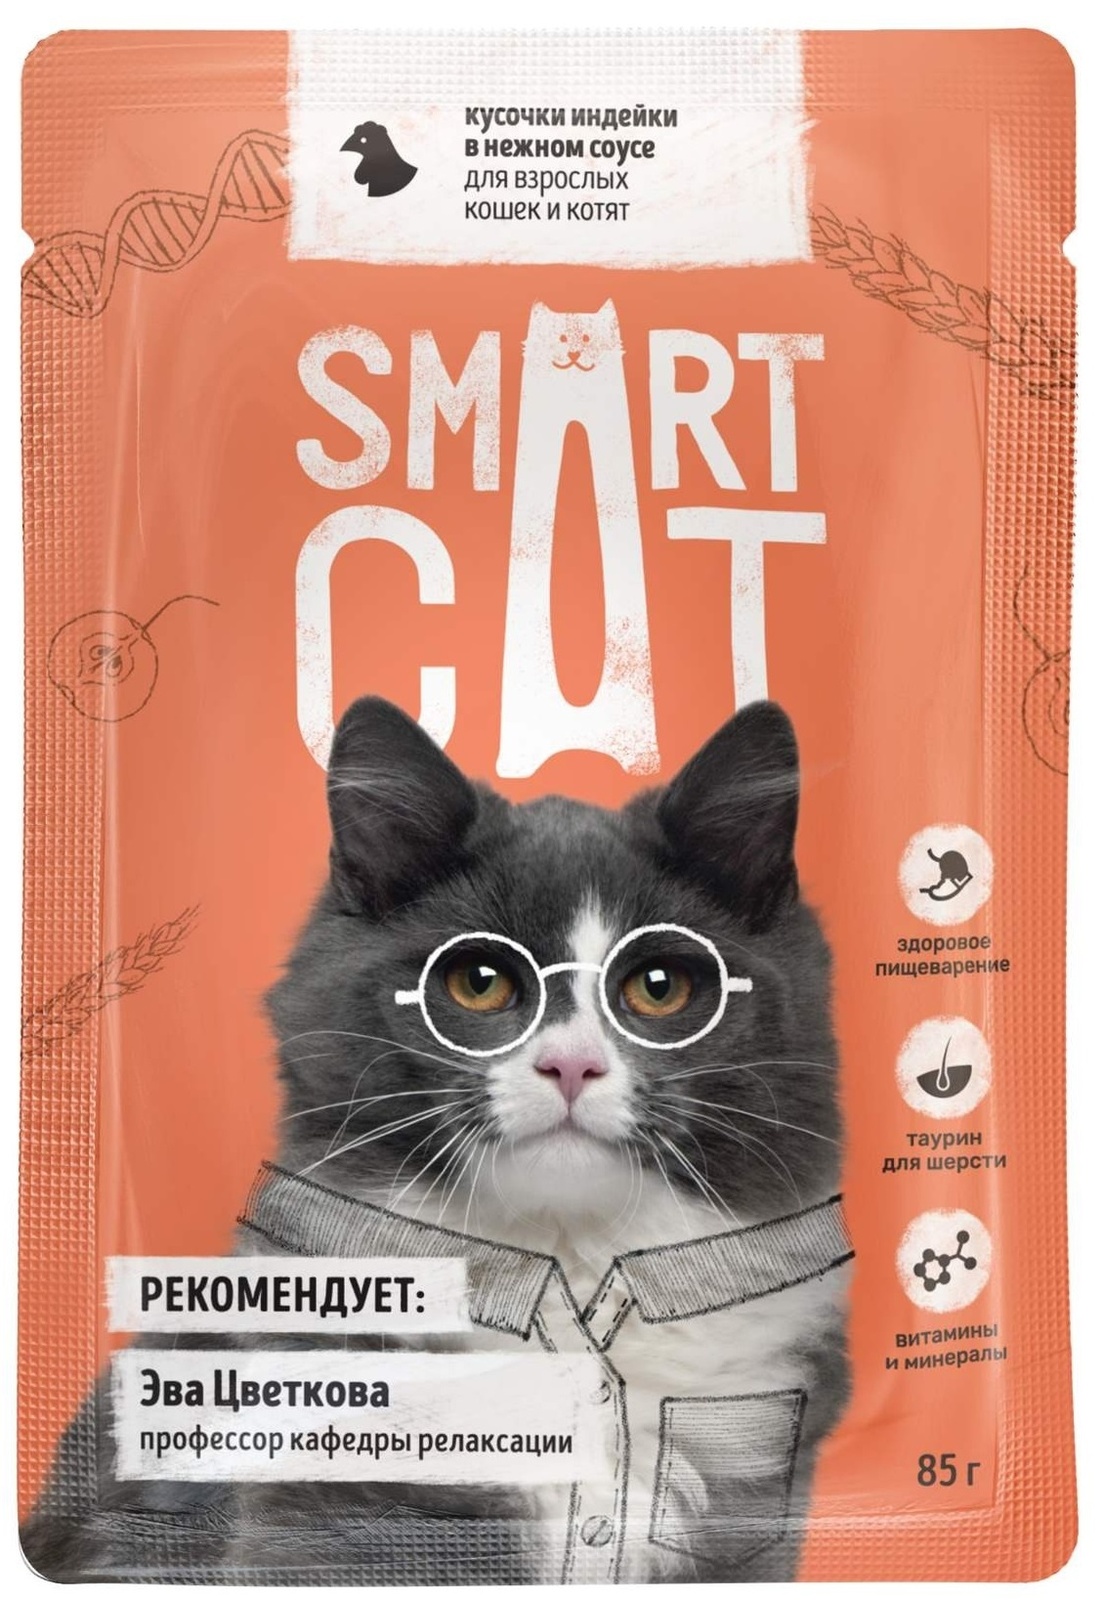 Smart Cat Smart Cat паучи для взрослых кошек и котят: кусочки индейки в нежном соусе (85 г)